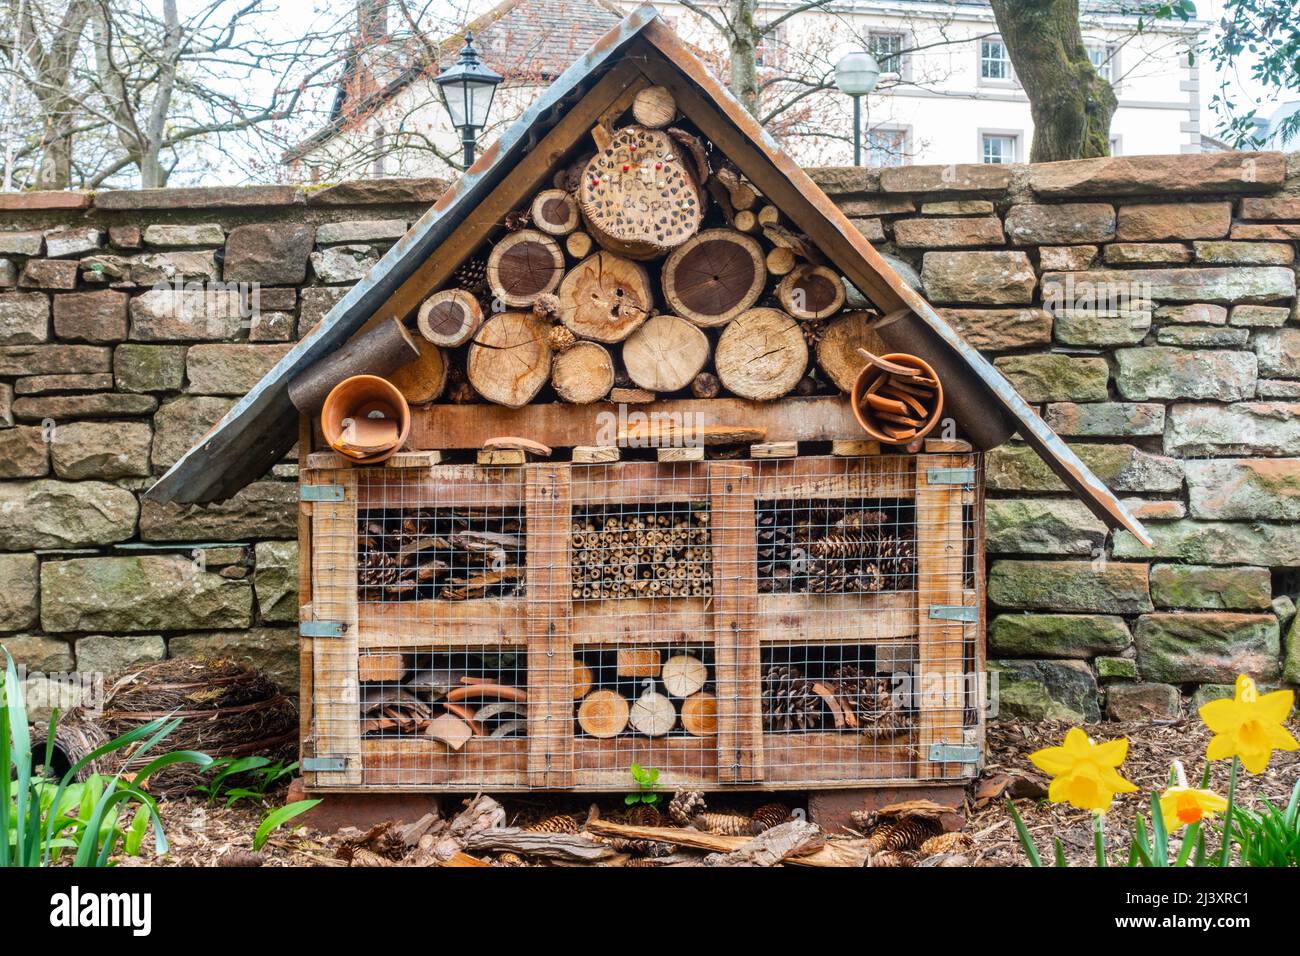 Un hotel di api o insetti attaccato ad un alberino in un giardino per fornire gli insetti un posto sicuro per ibernare. Foto Stock